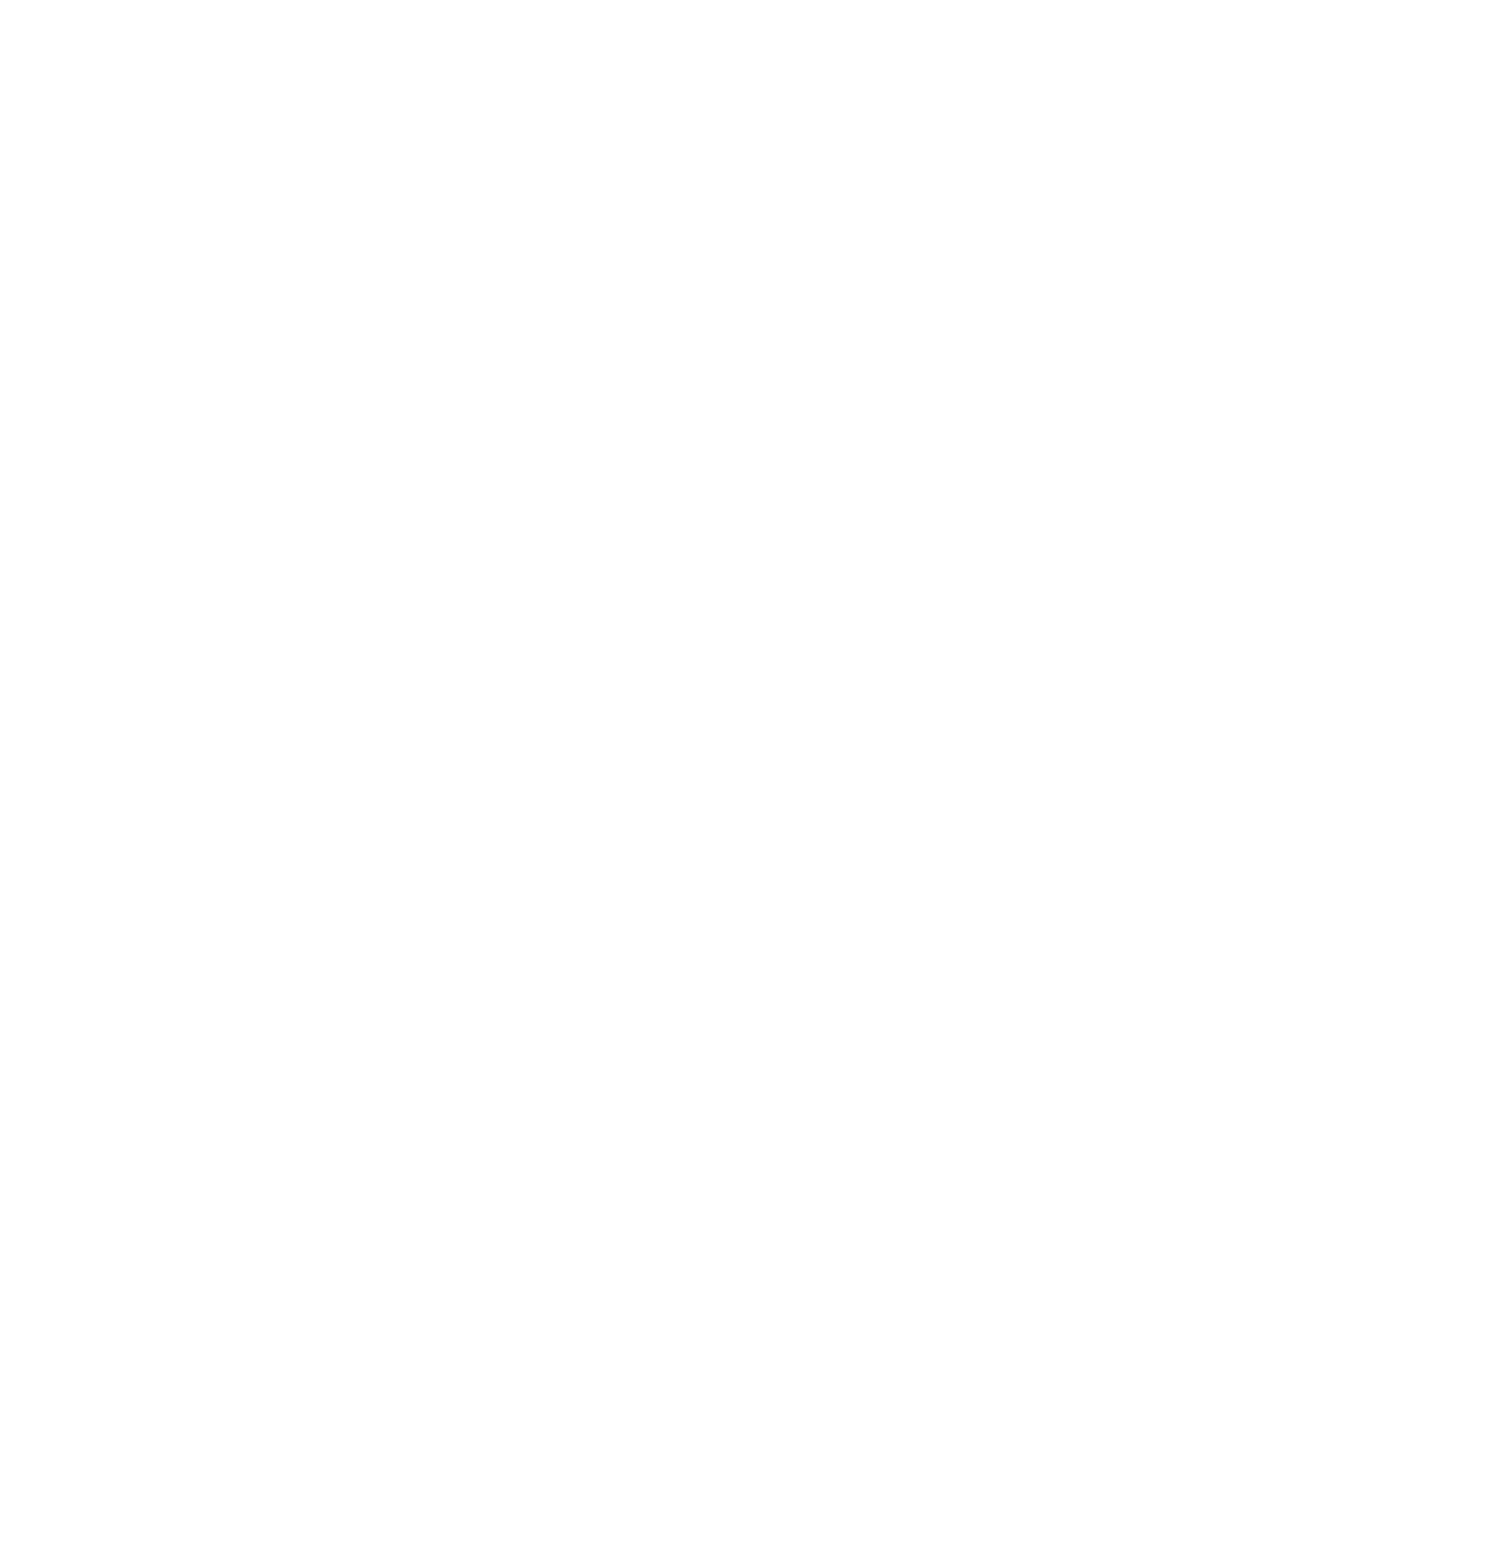 Regener8 Farm &amp; Retreat